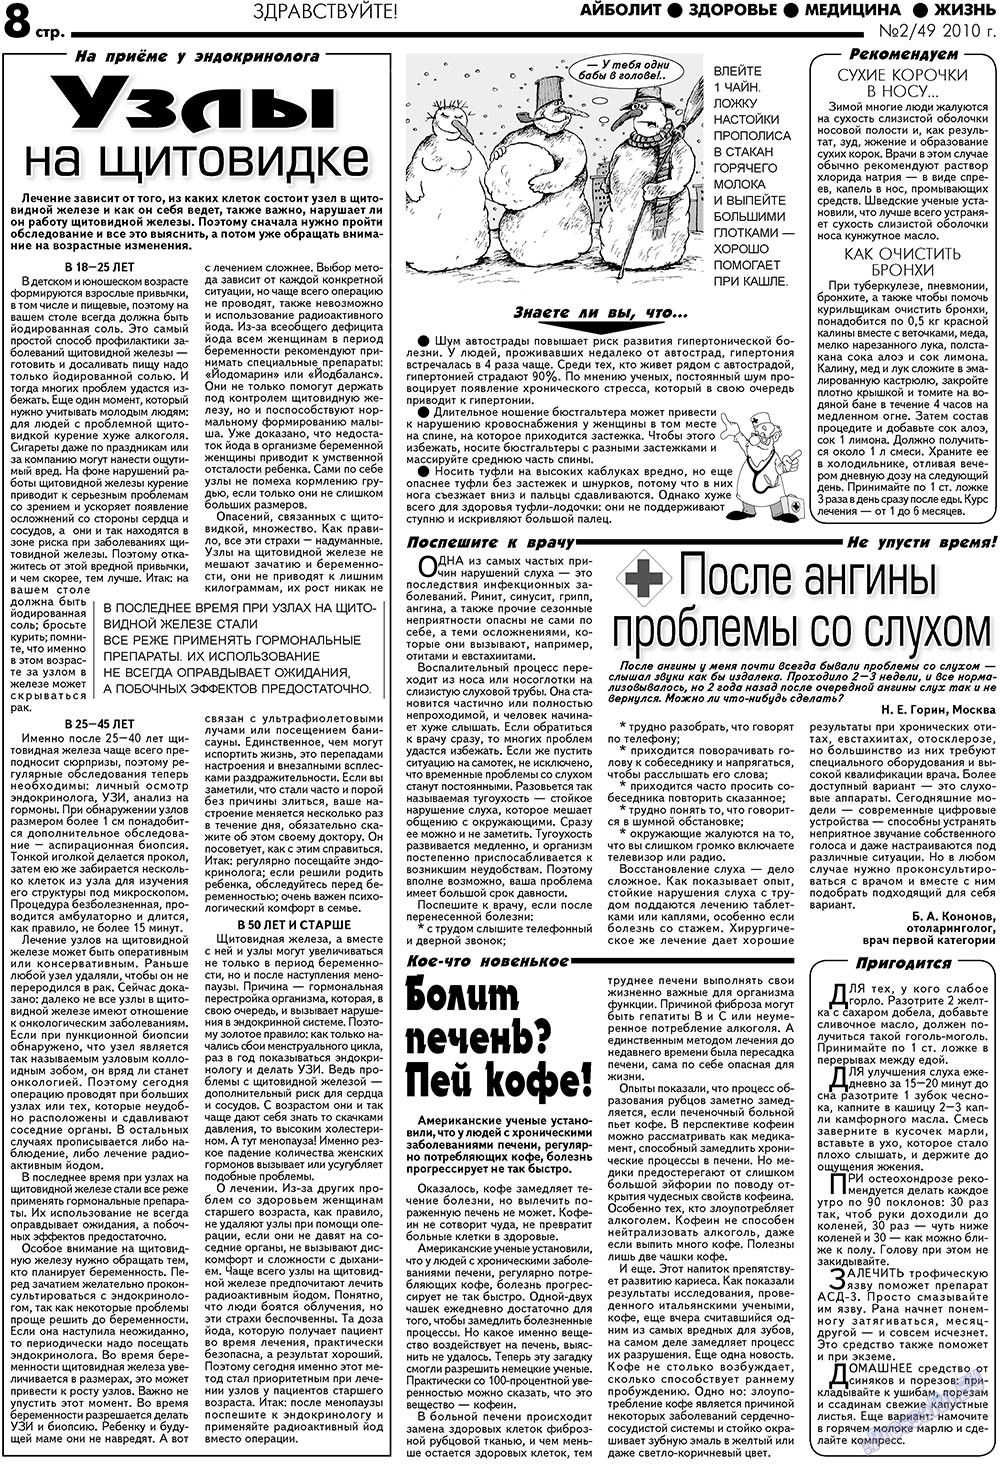 АйБолит, газета. 2010 №2 стр.8